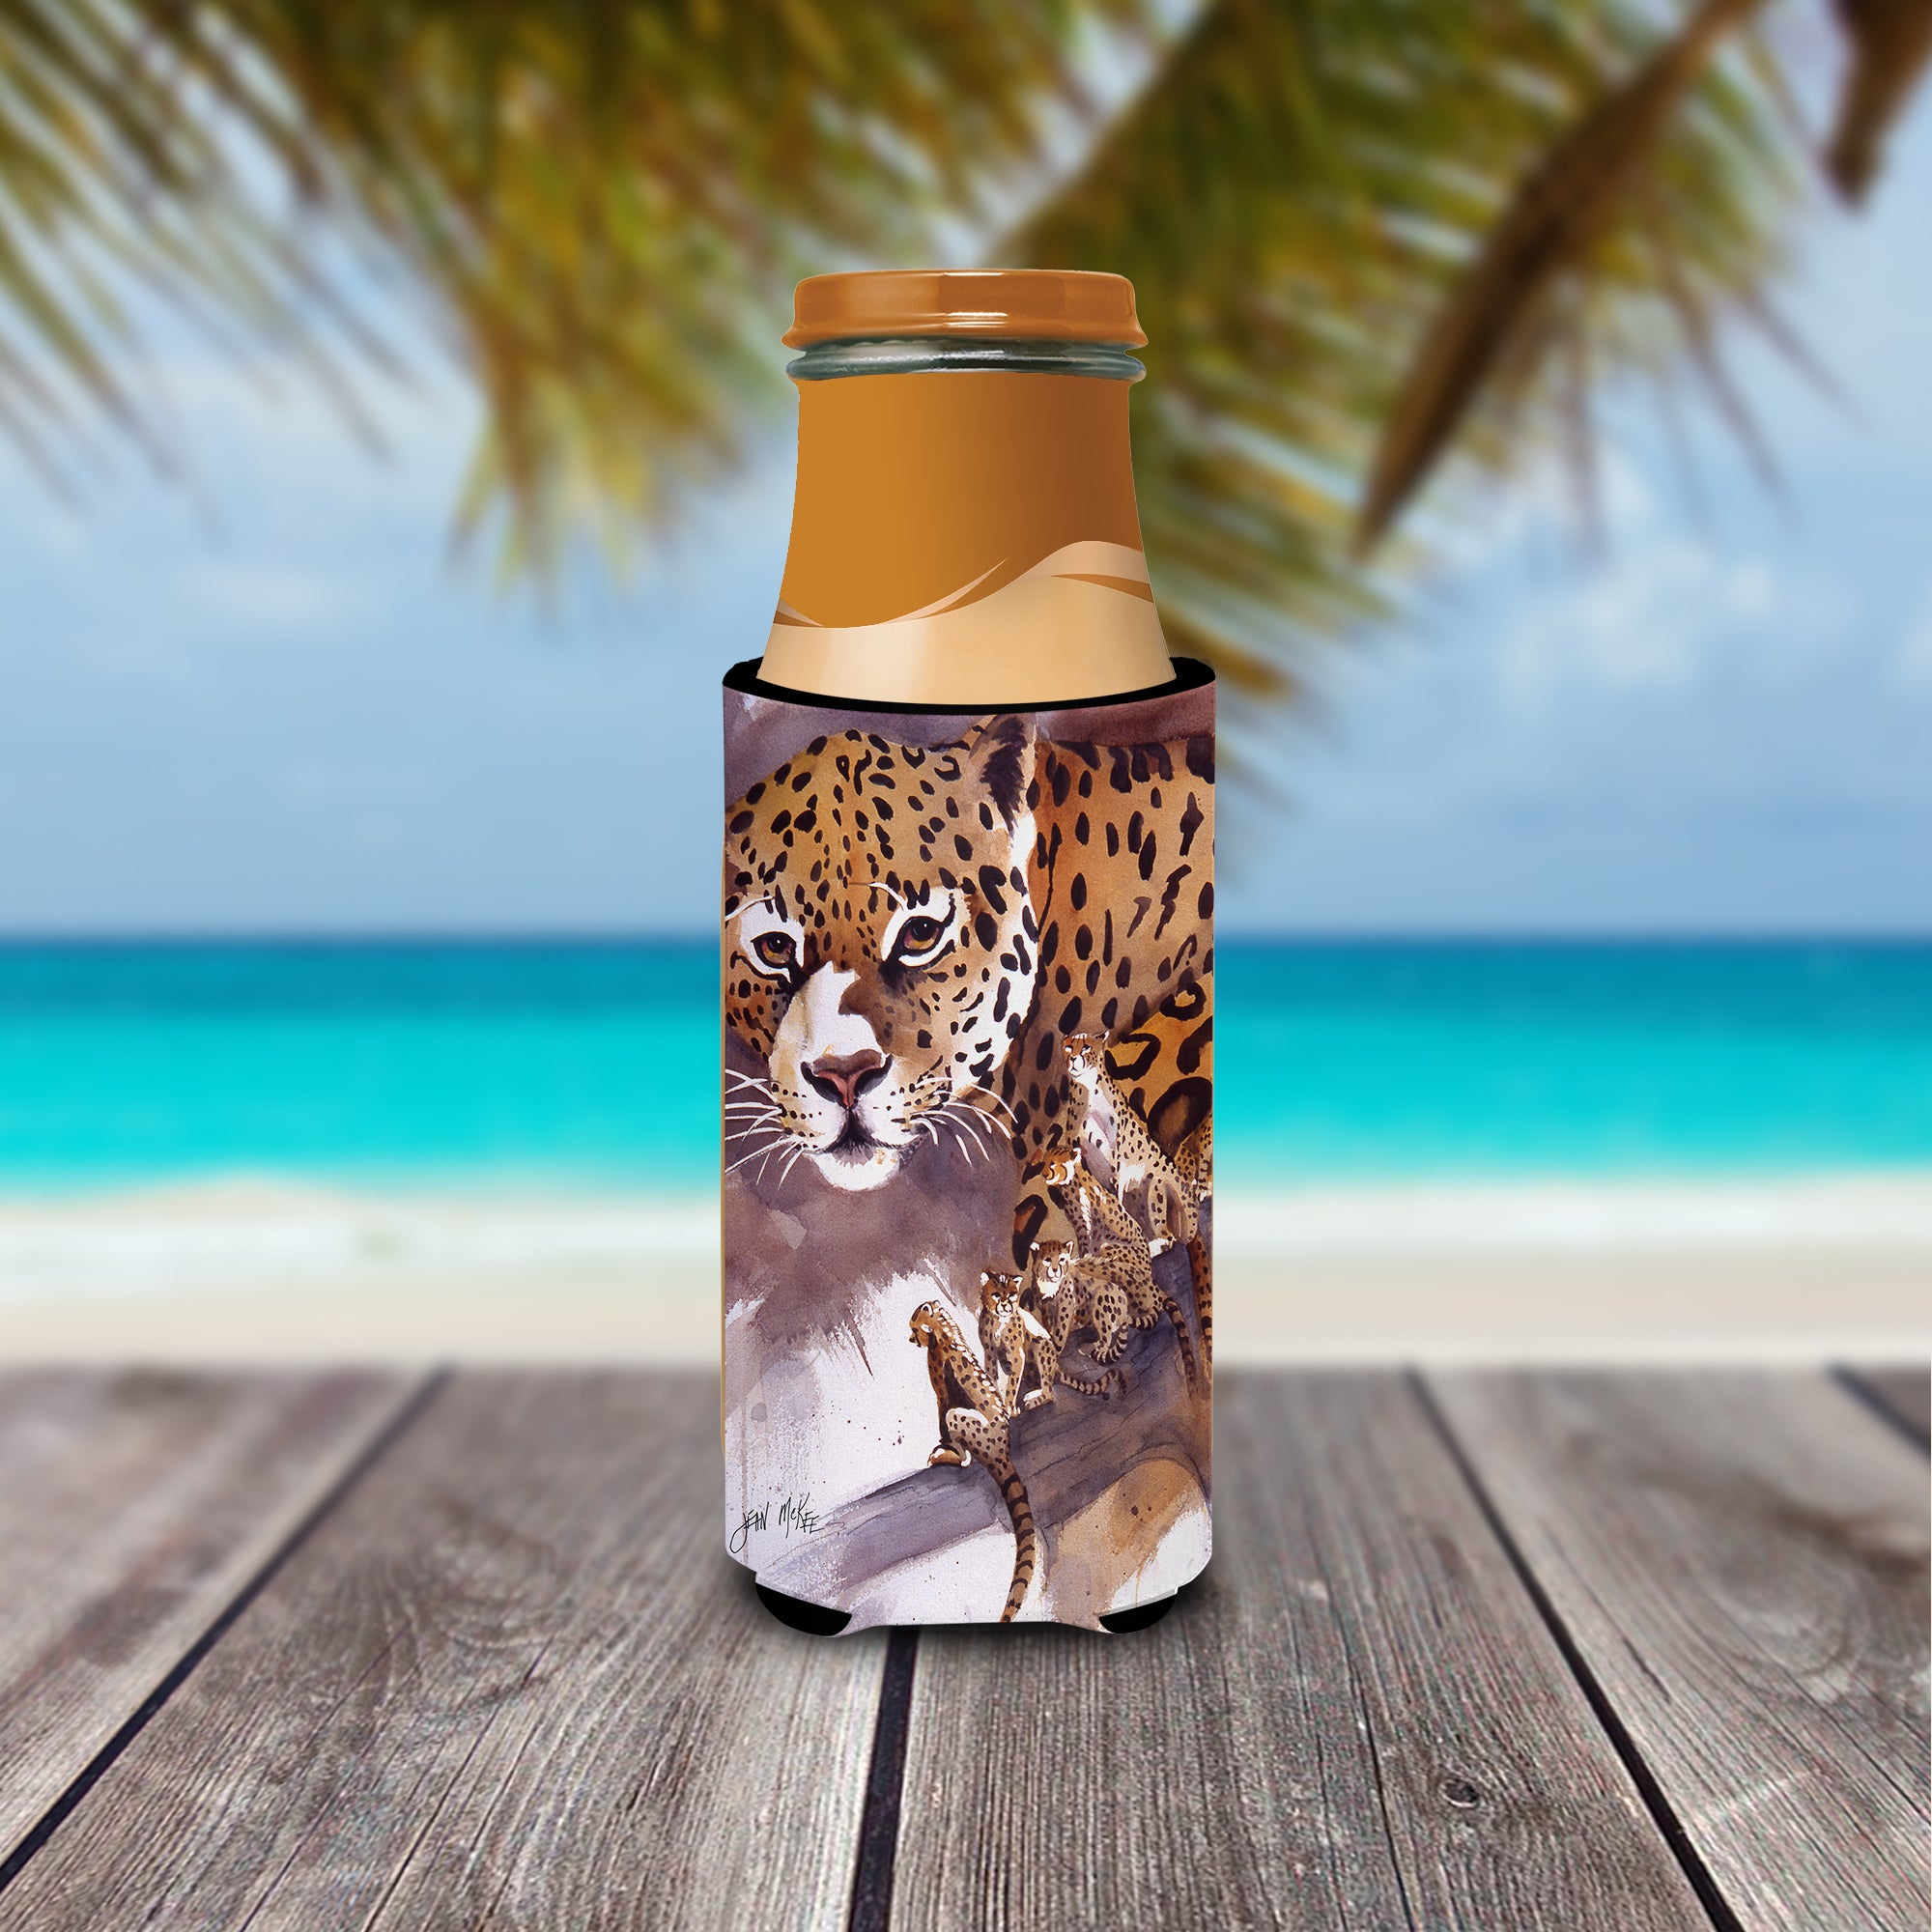 Cheetah Ultra Beverage Insulators for slim cans JMK1193MUK